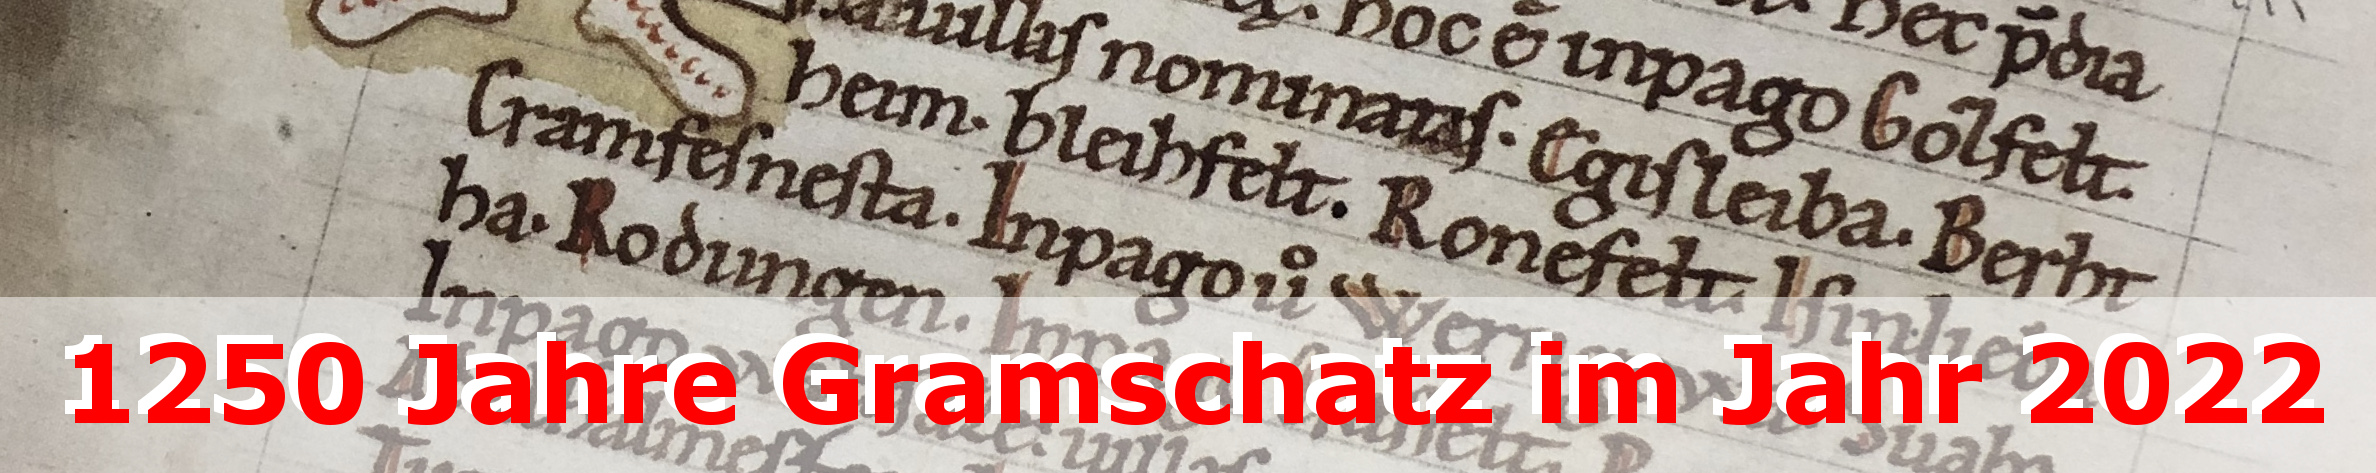 1250 Jahre Gramschatz - weitere Infos - HIER KLICKEN